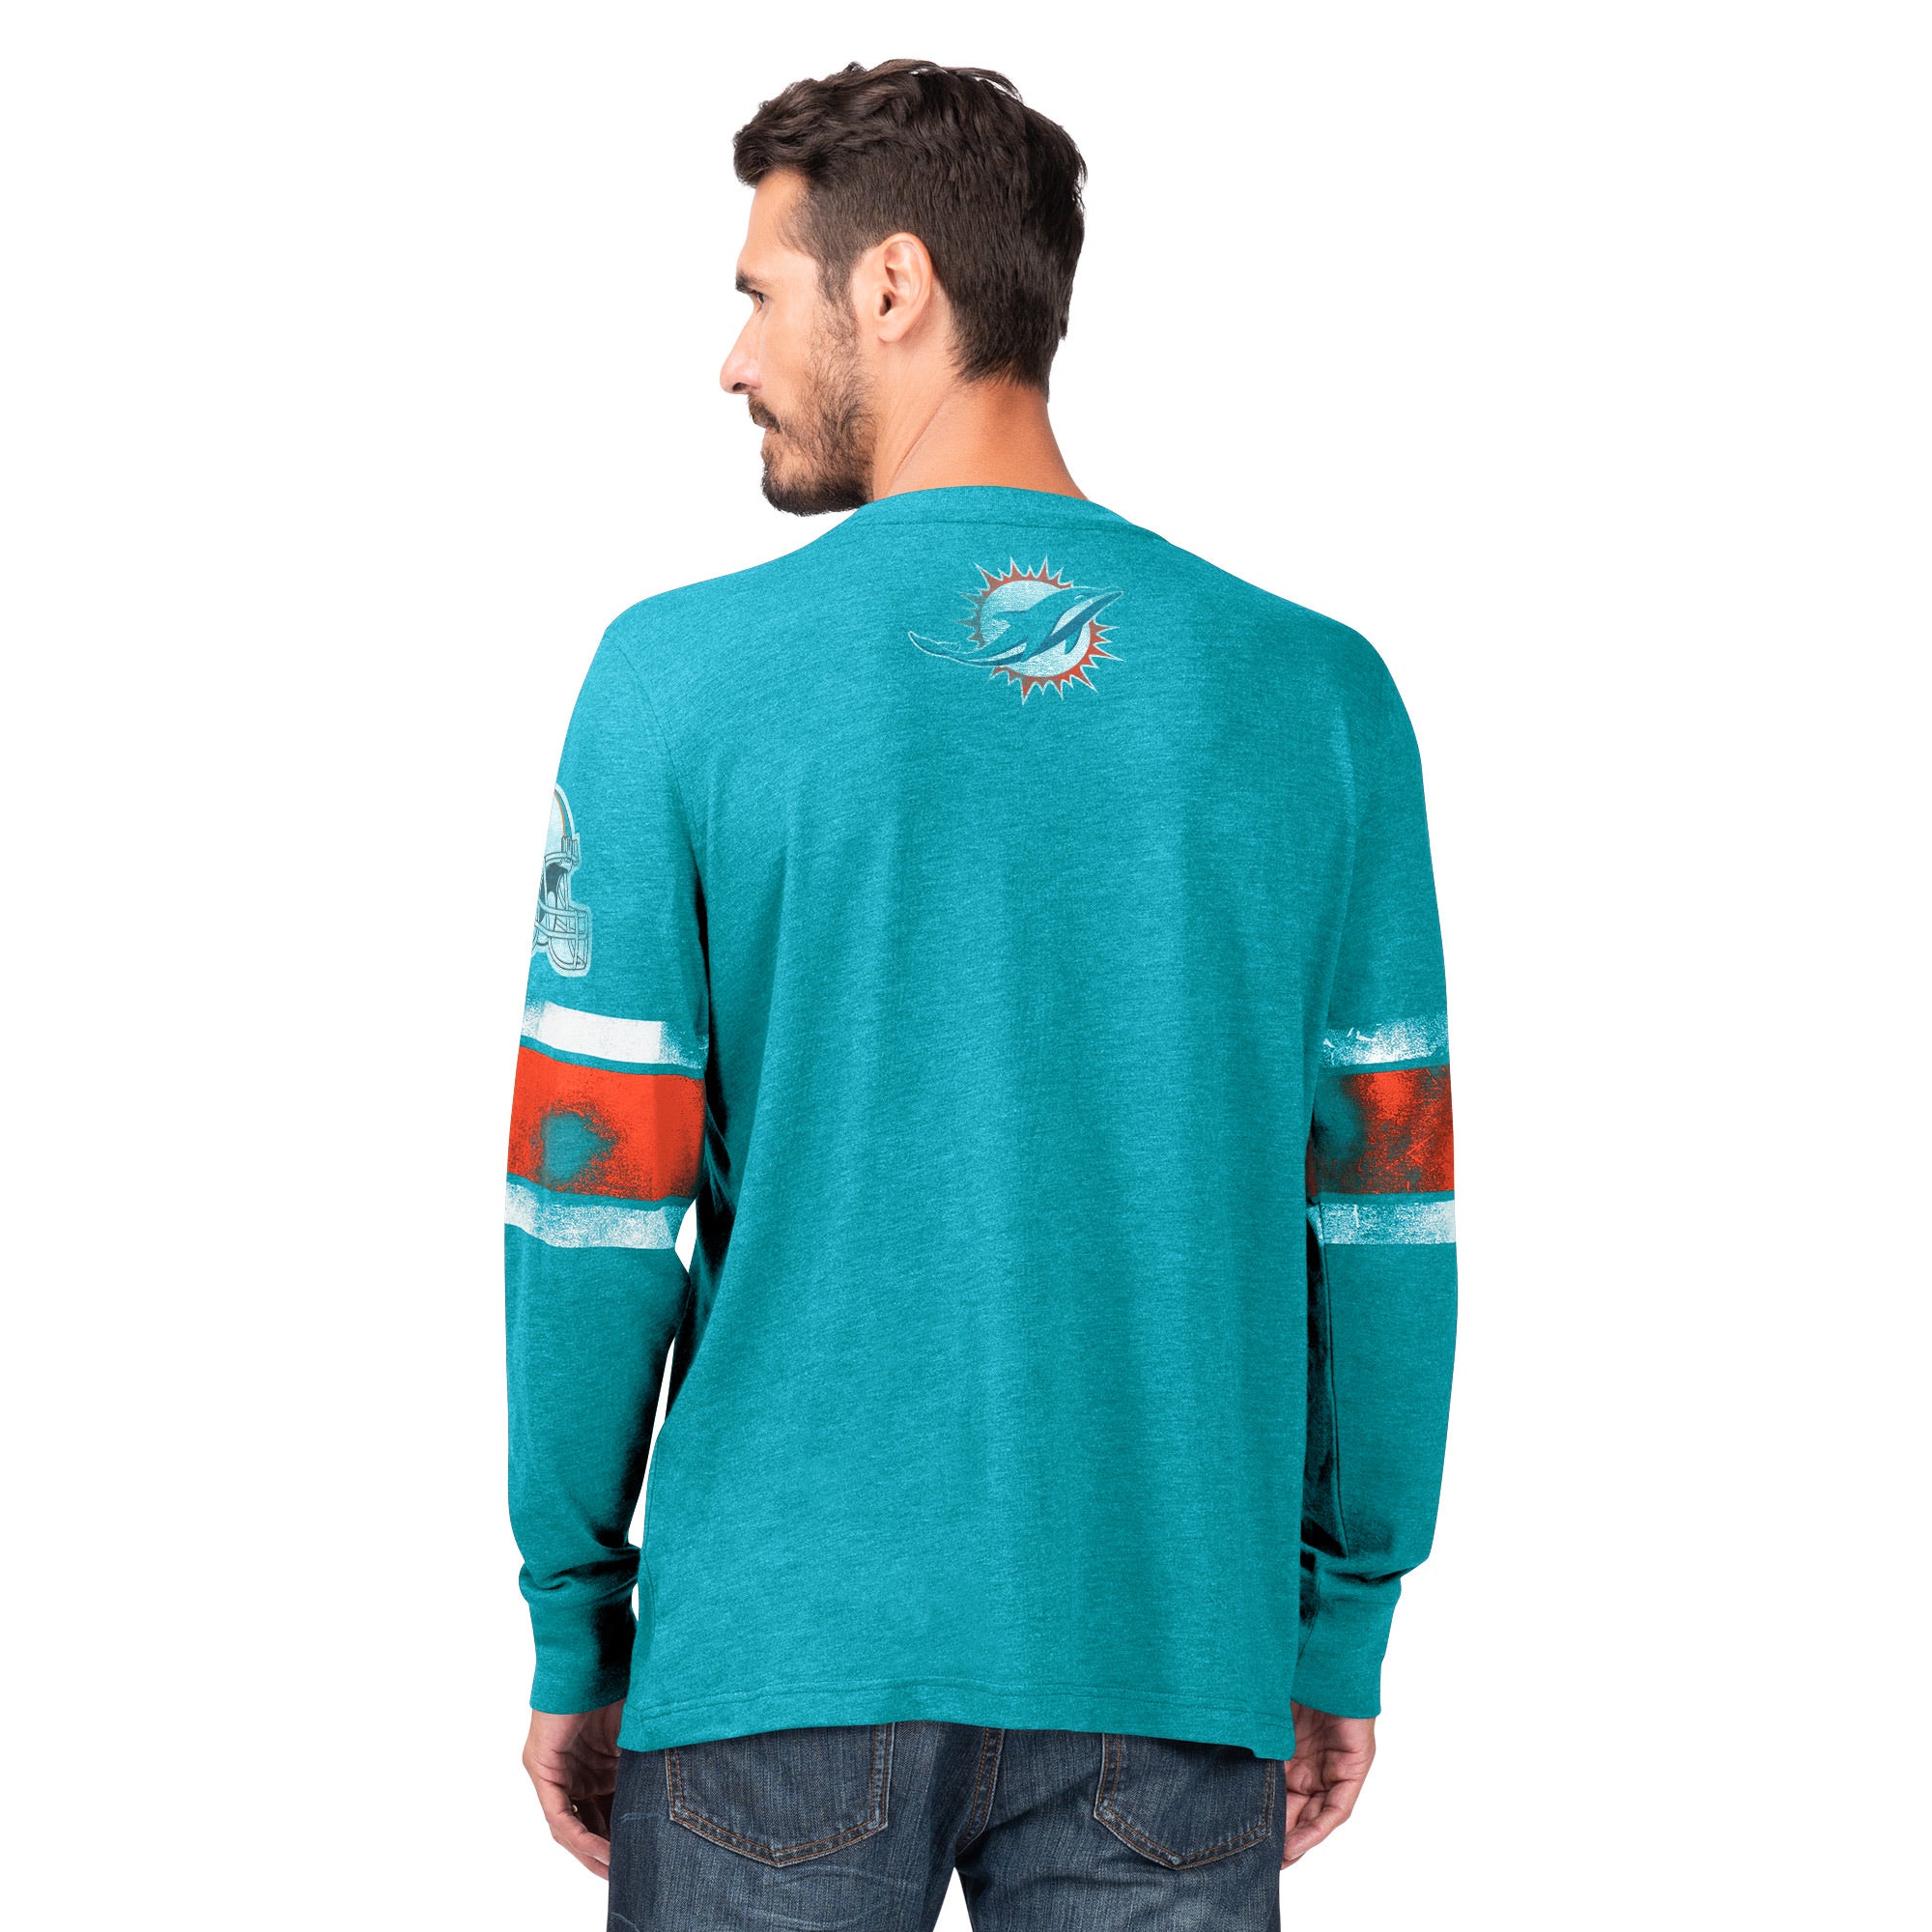 Miami Dolphins Glll Men's Big Print L/S T-Shirt  -Aqua